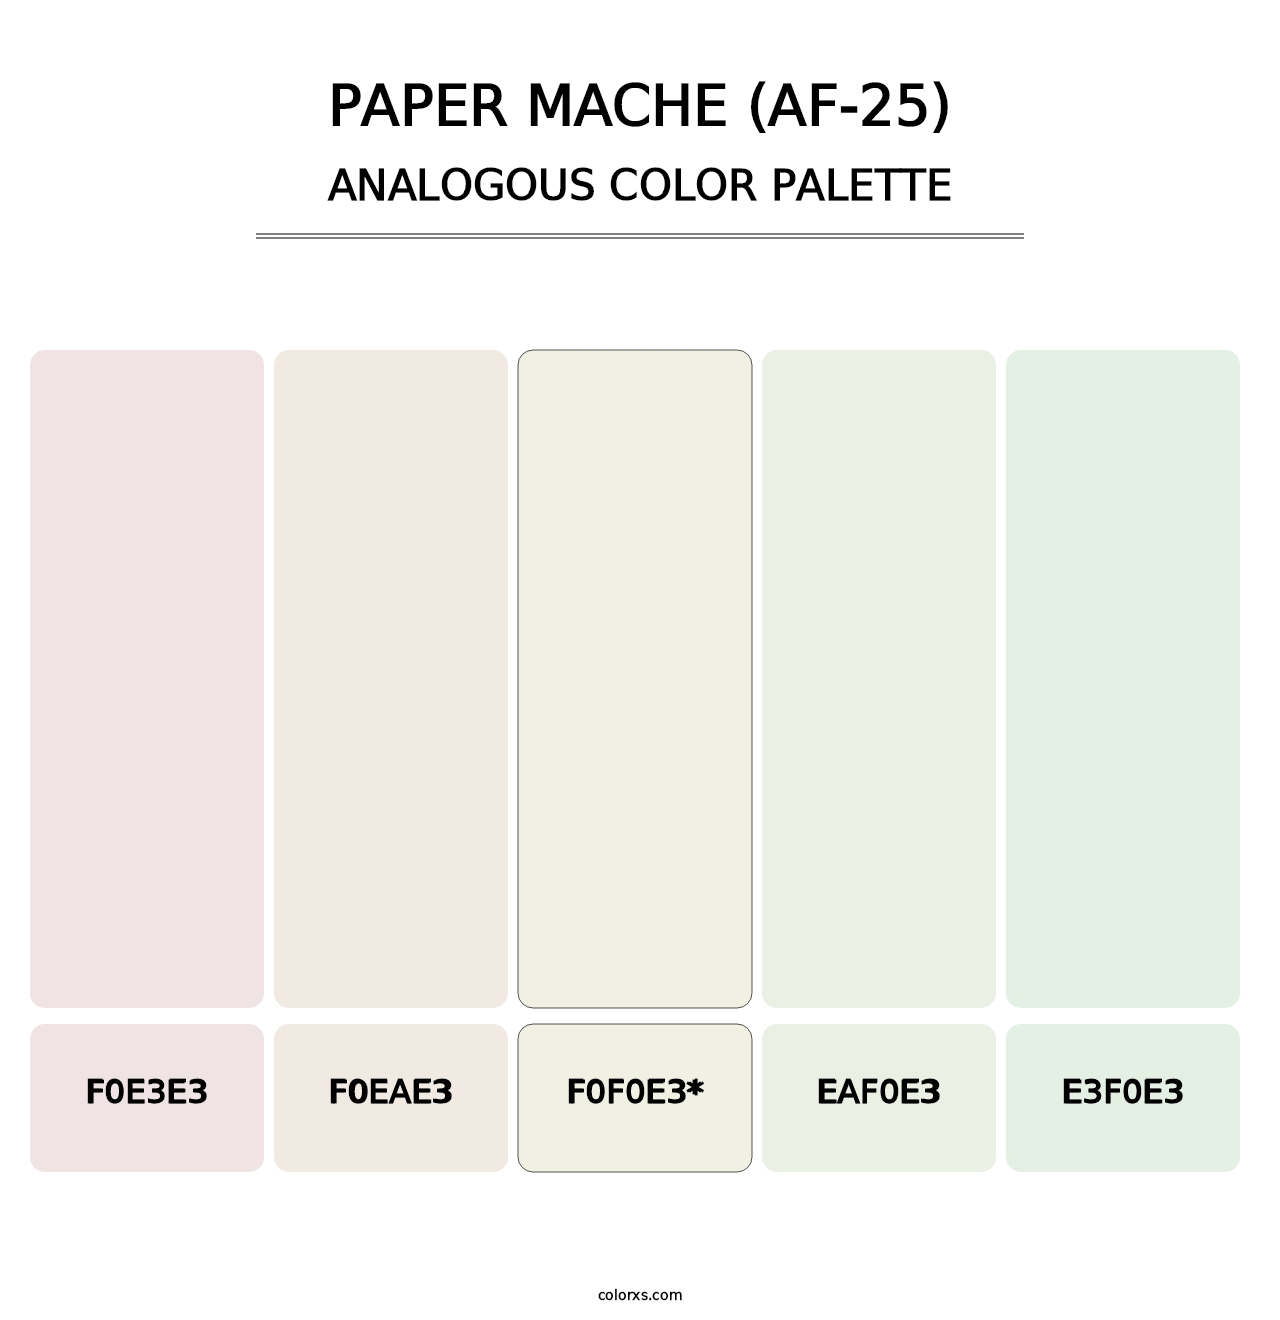 Paper Mache (AF-25) - Analogous Color Palette